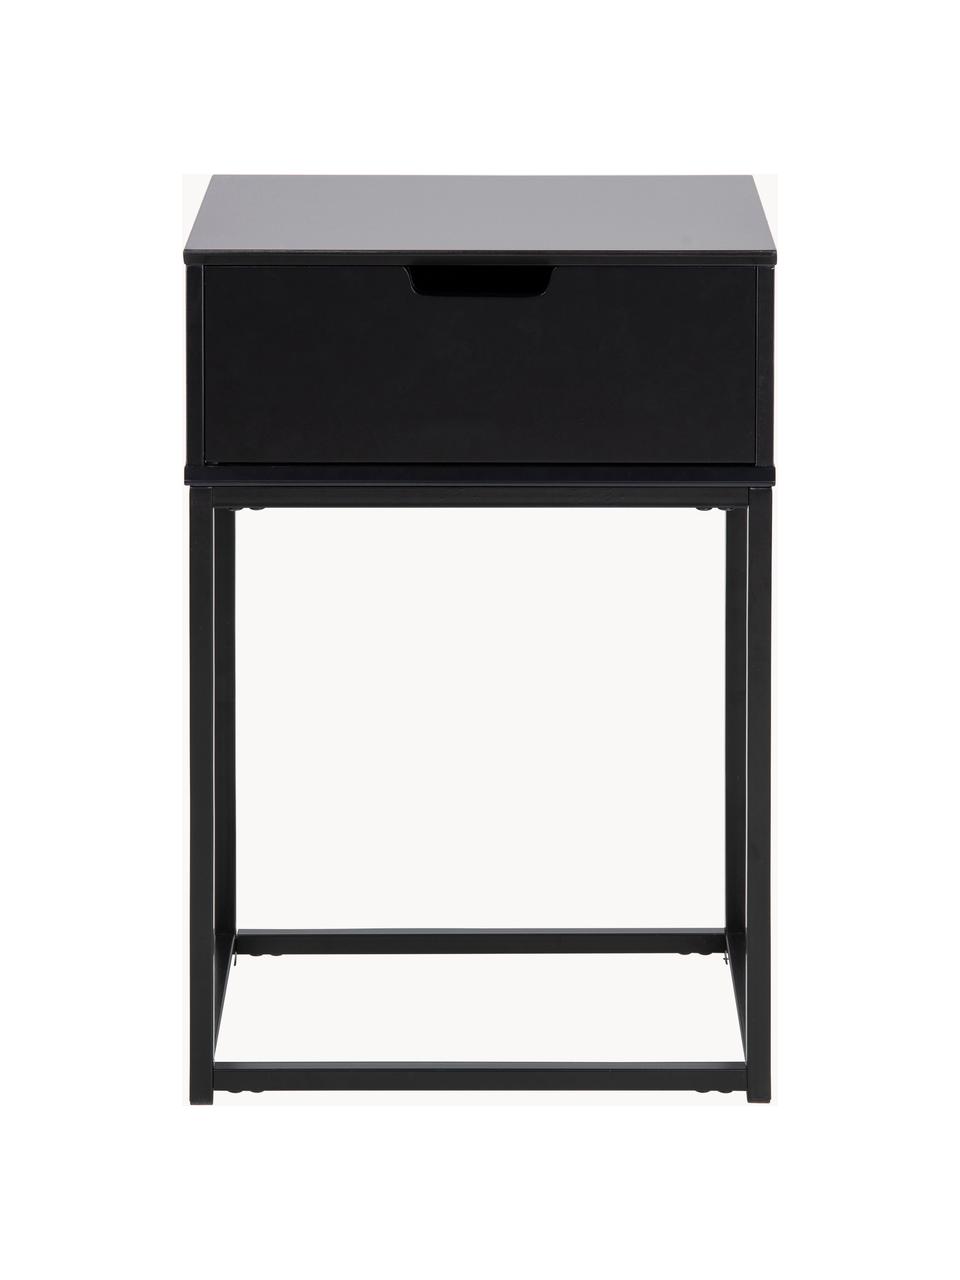 Noční stolek Mitra, Lakovaná MDF deska (dřevovláknitá deska střední hustoty), kov s práškovým nástřikem, Černá, Š 40 cm, V 62 cm